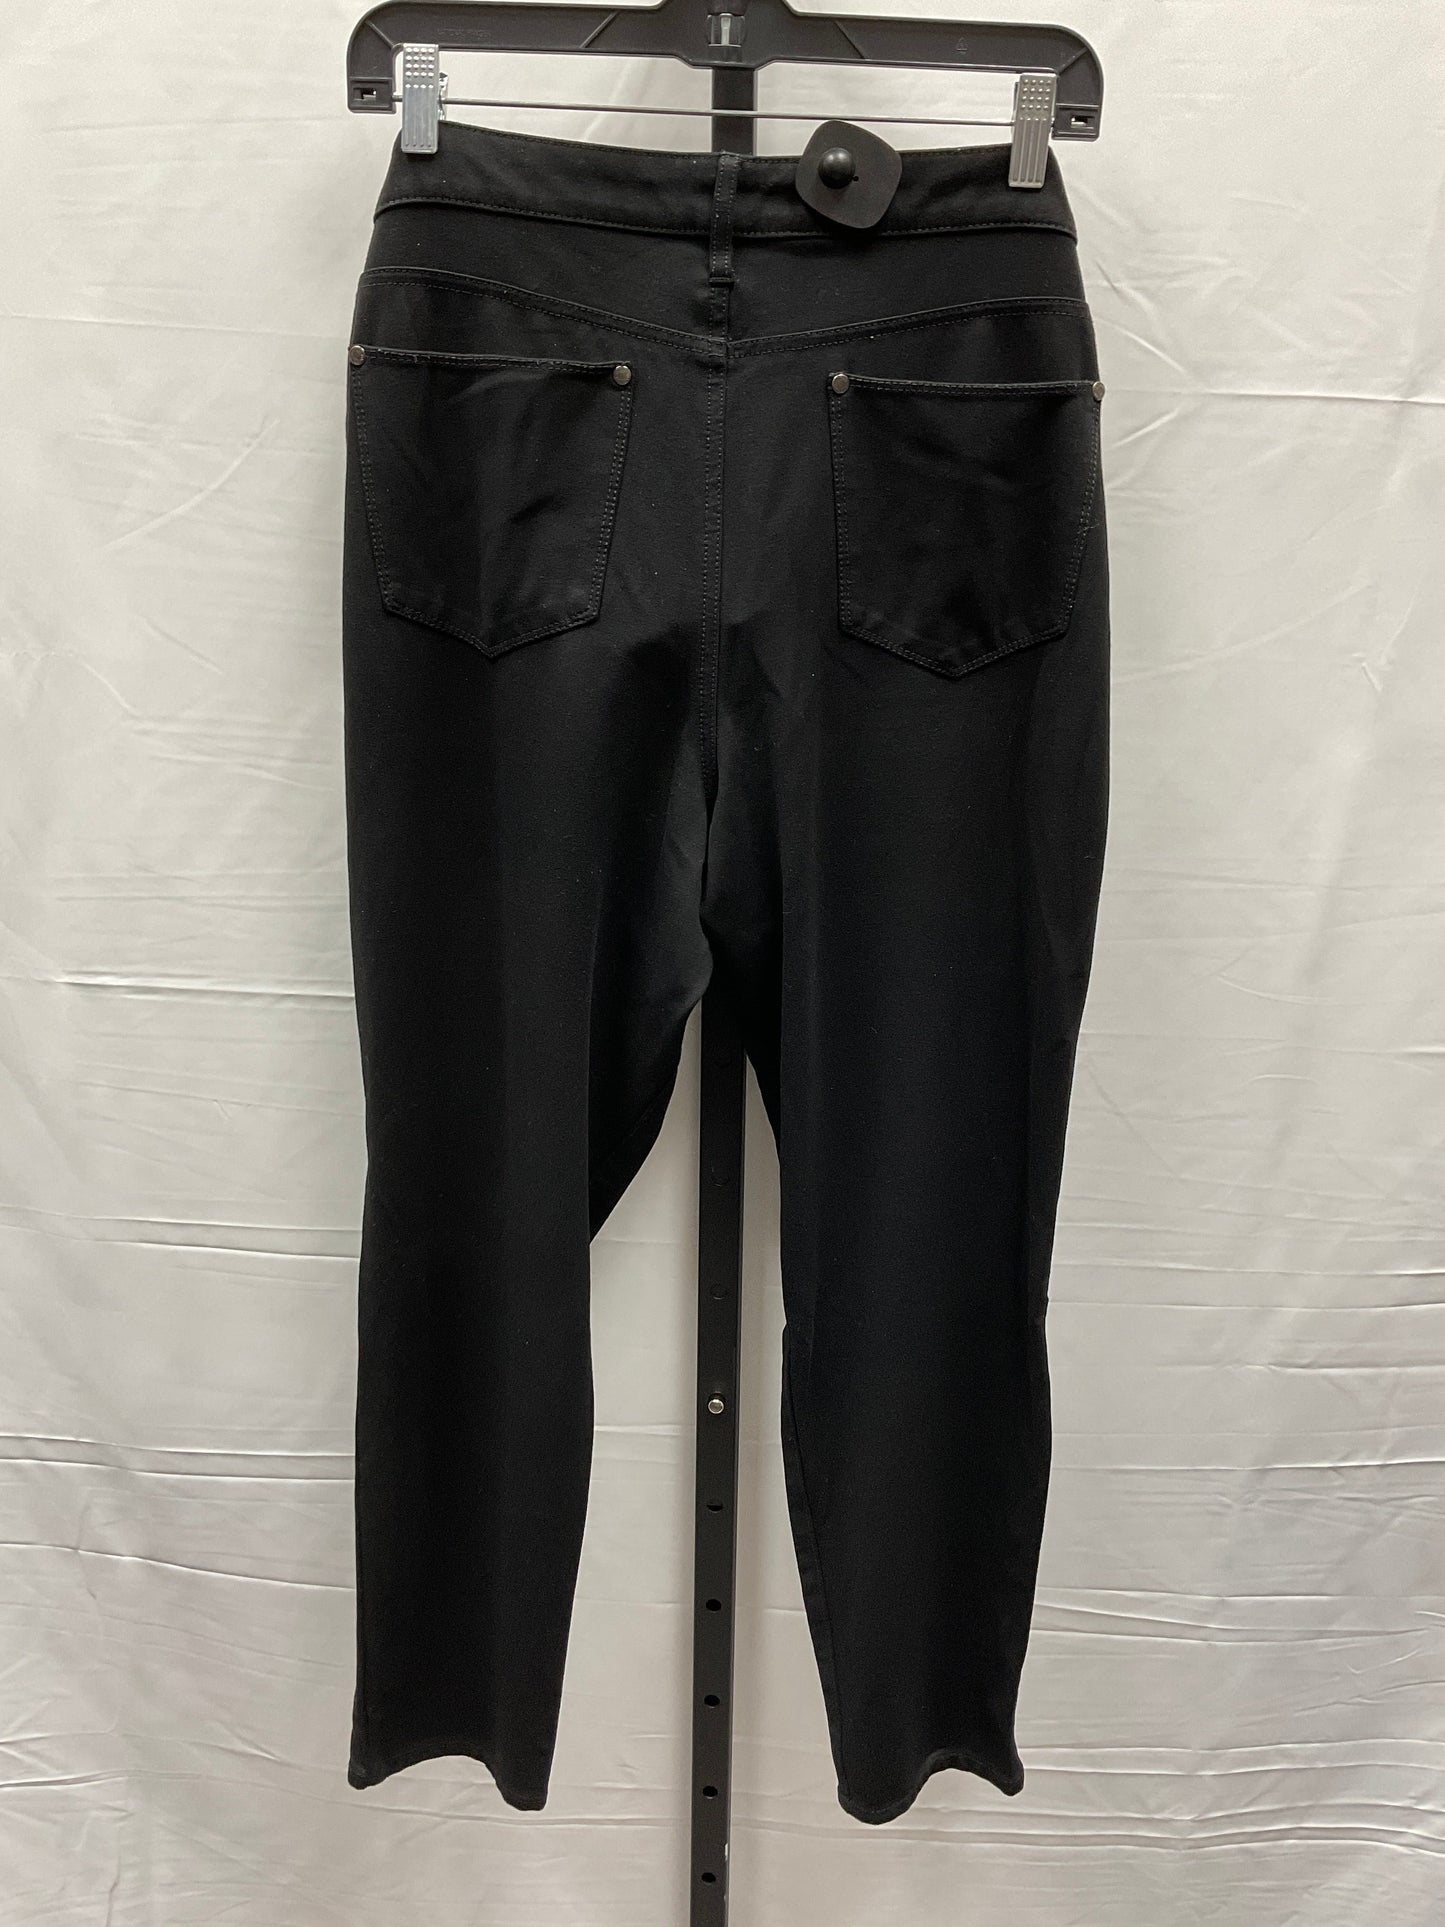 Pants Other By Gloria Vanderbilt  Size: 16